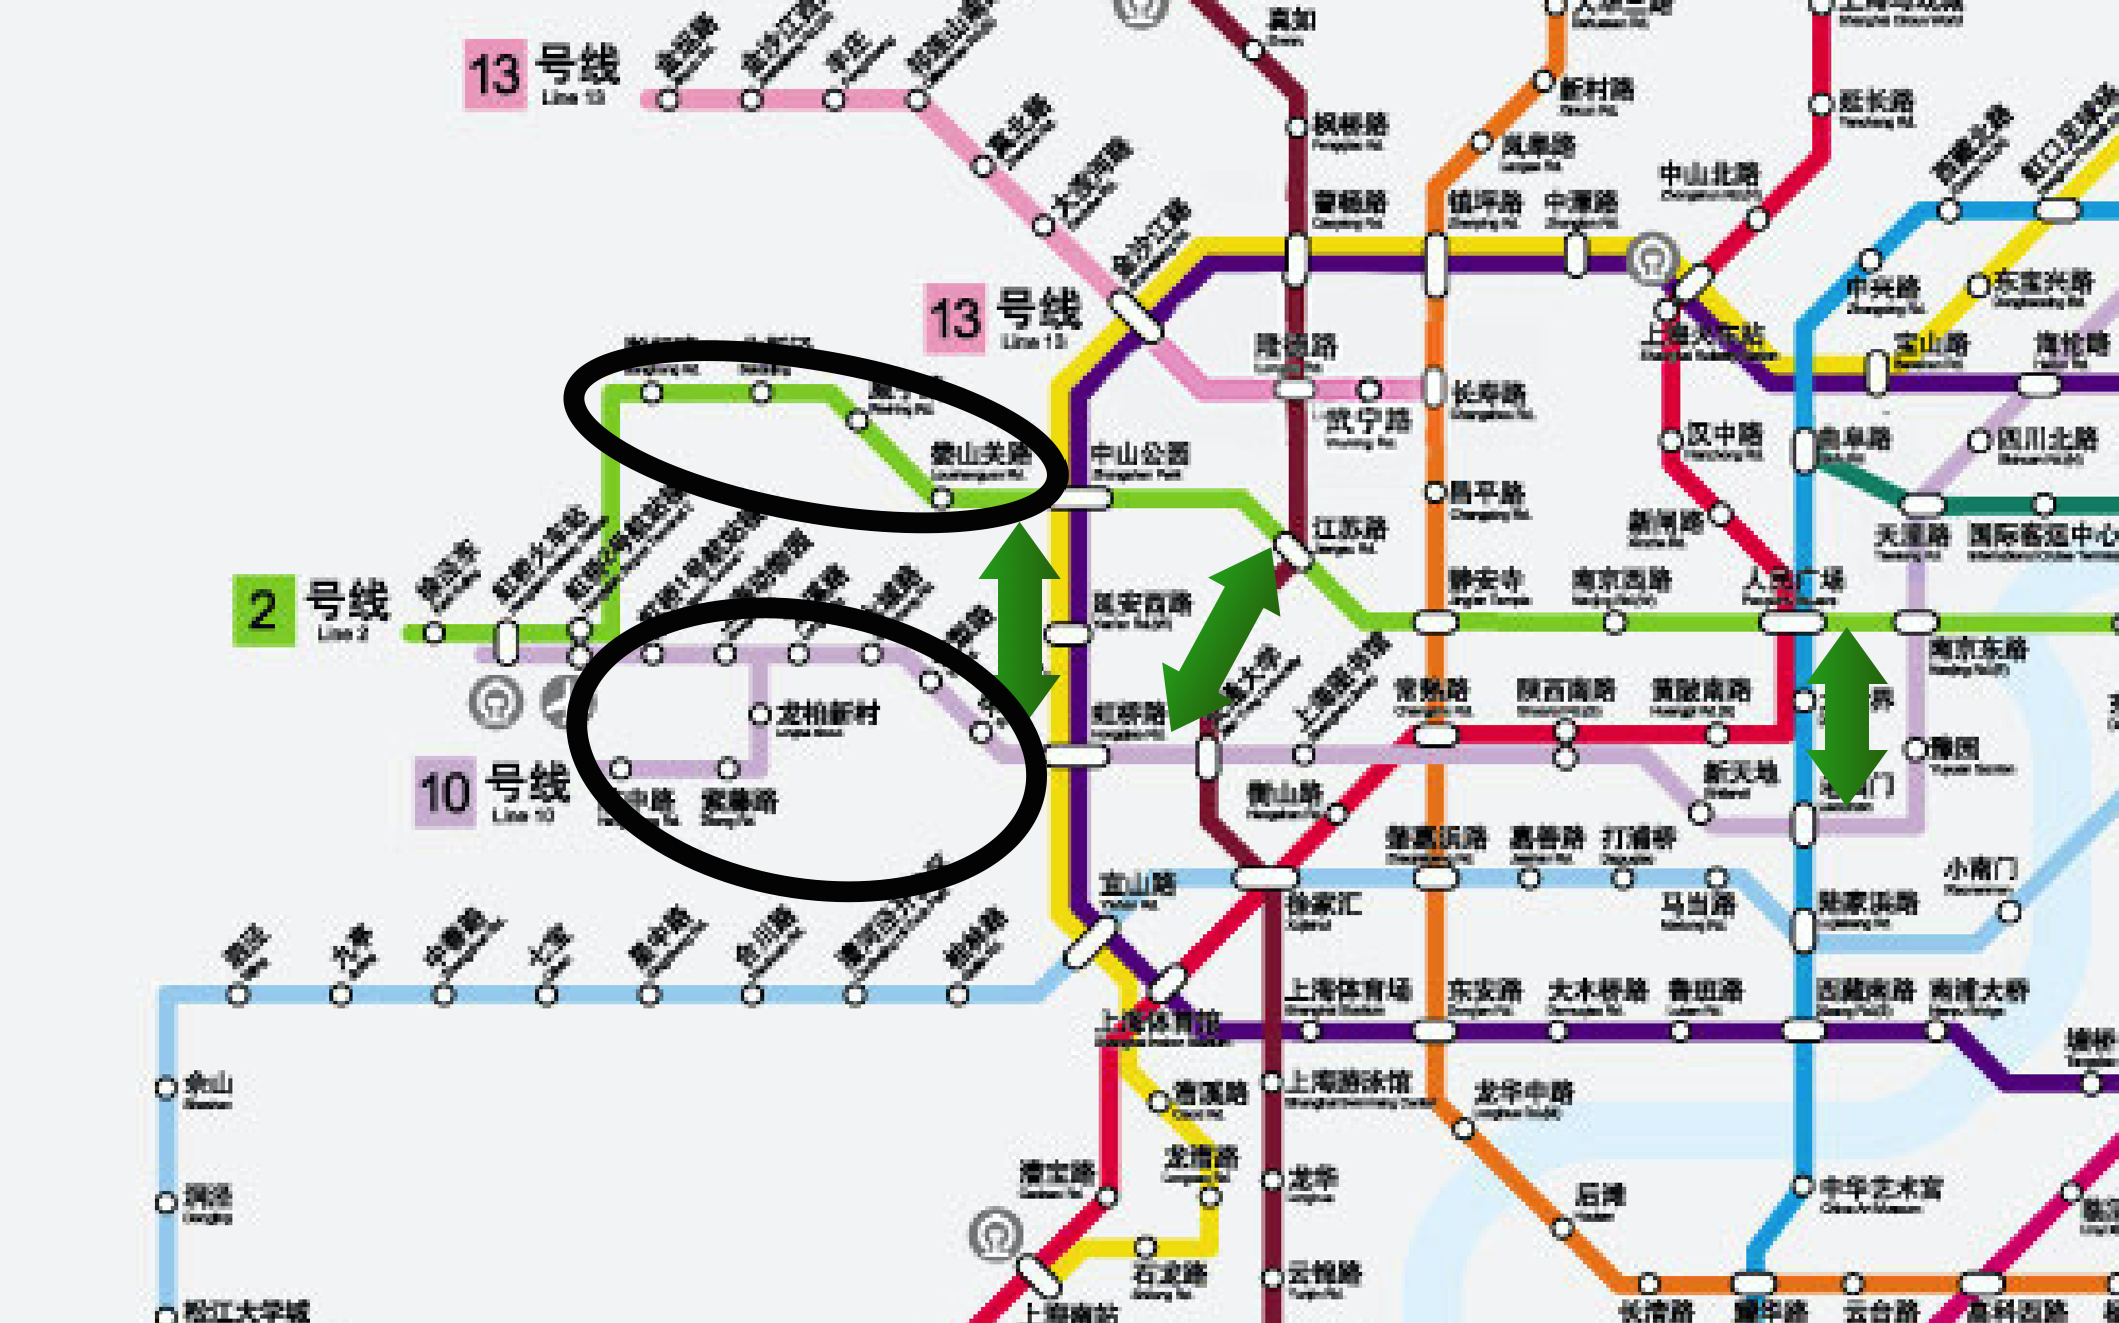 【上海地铁】10号线pov视角老西门进站_哔哩哔哩_bilibili